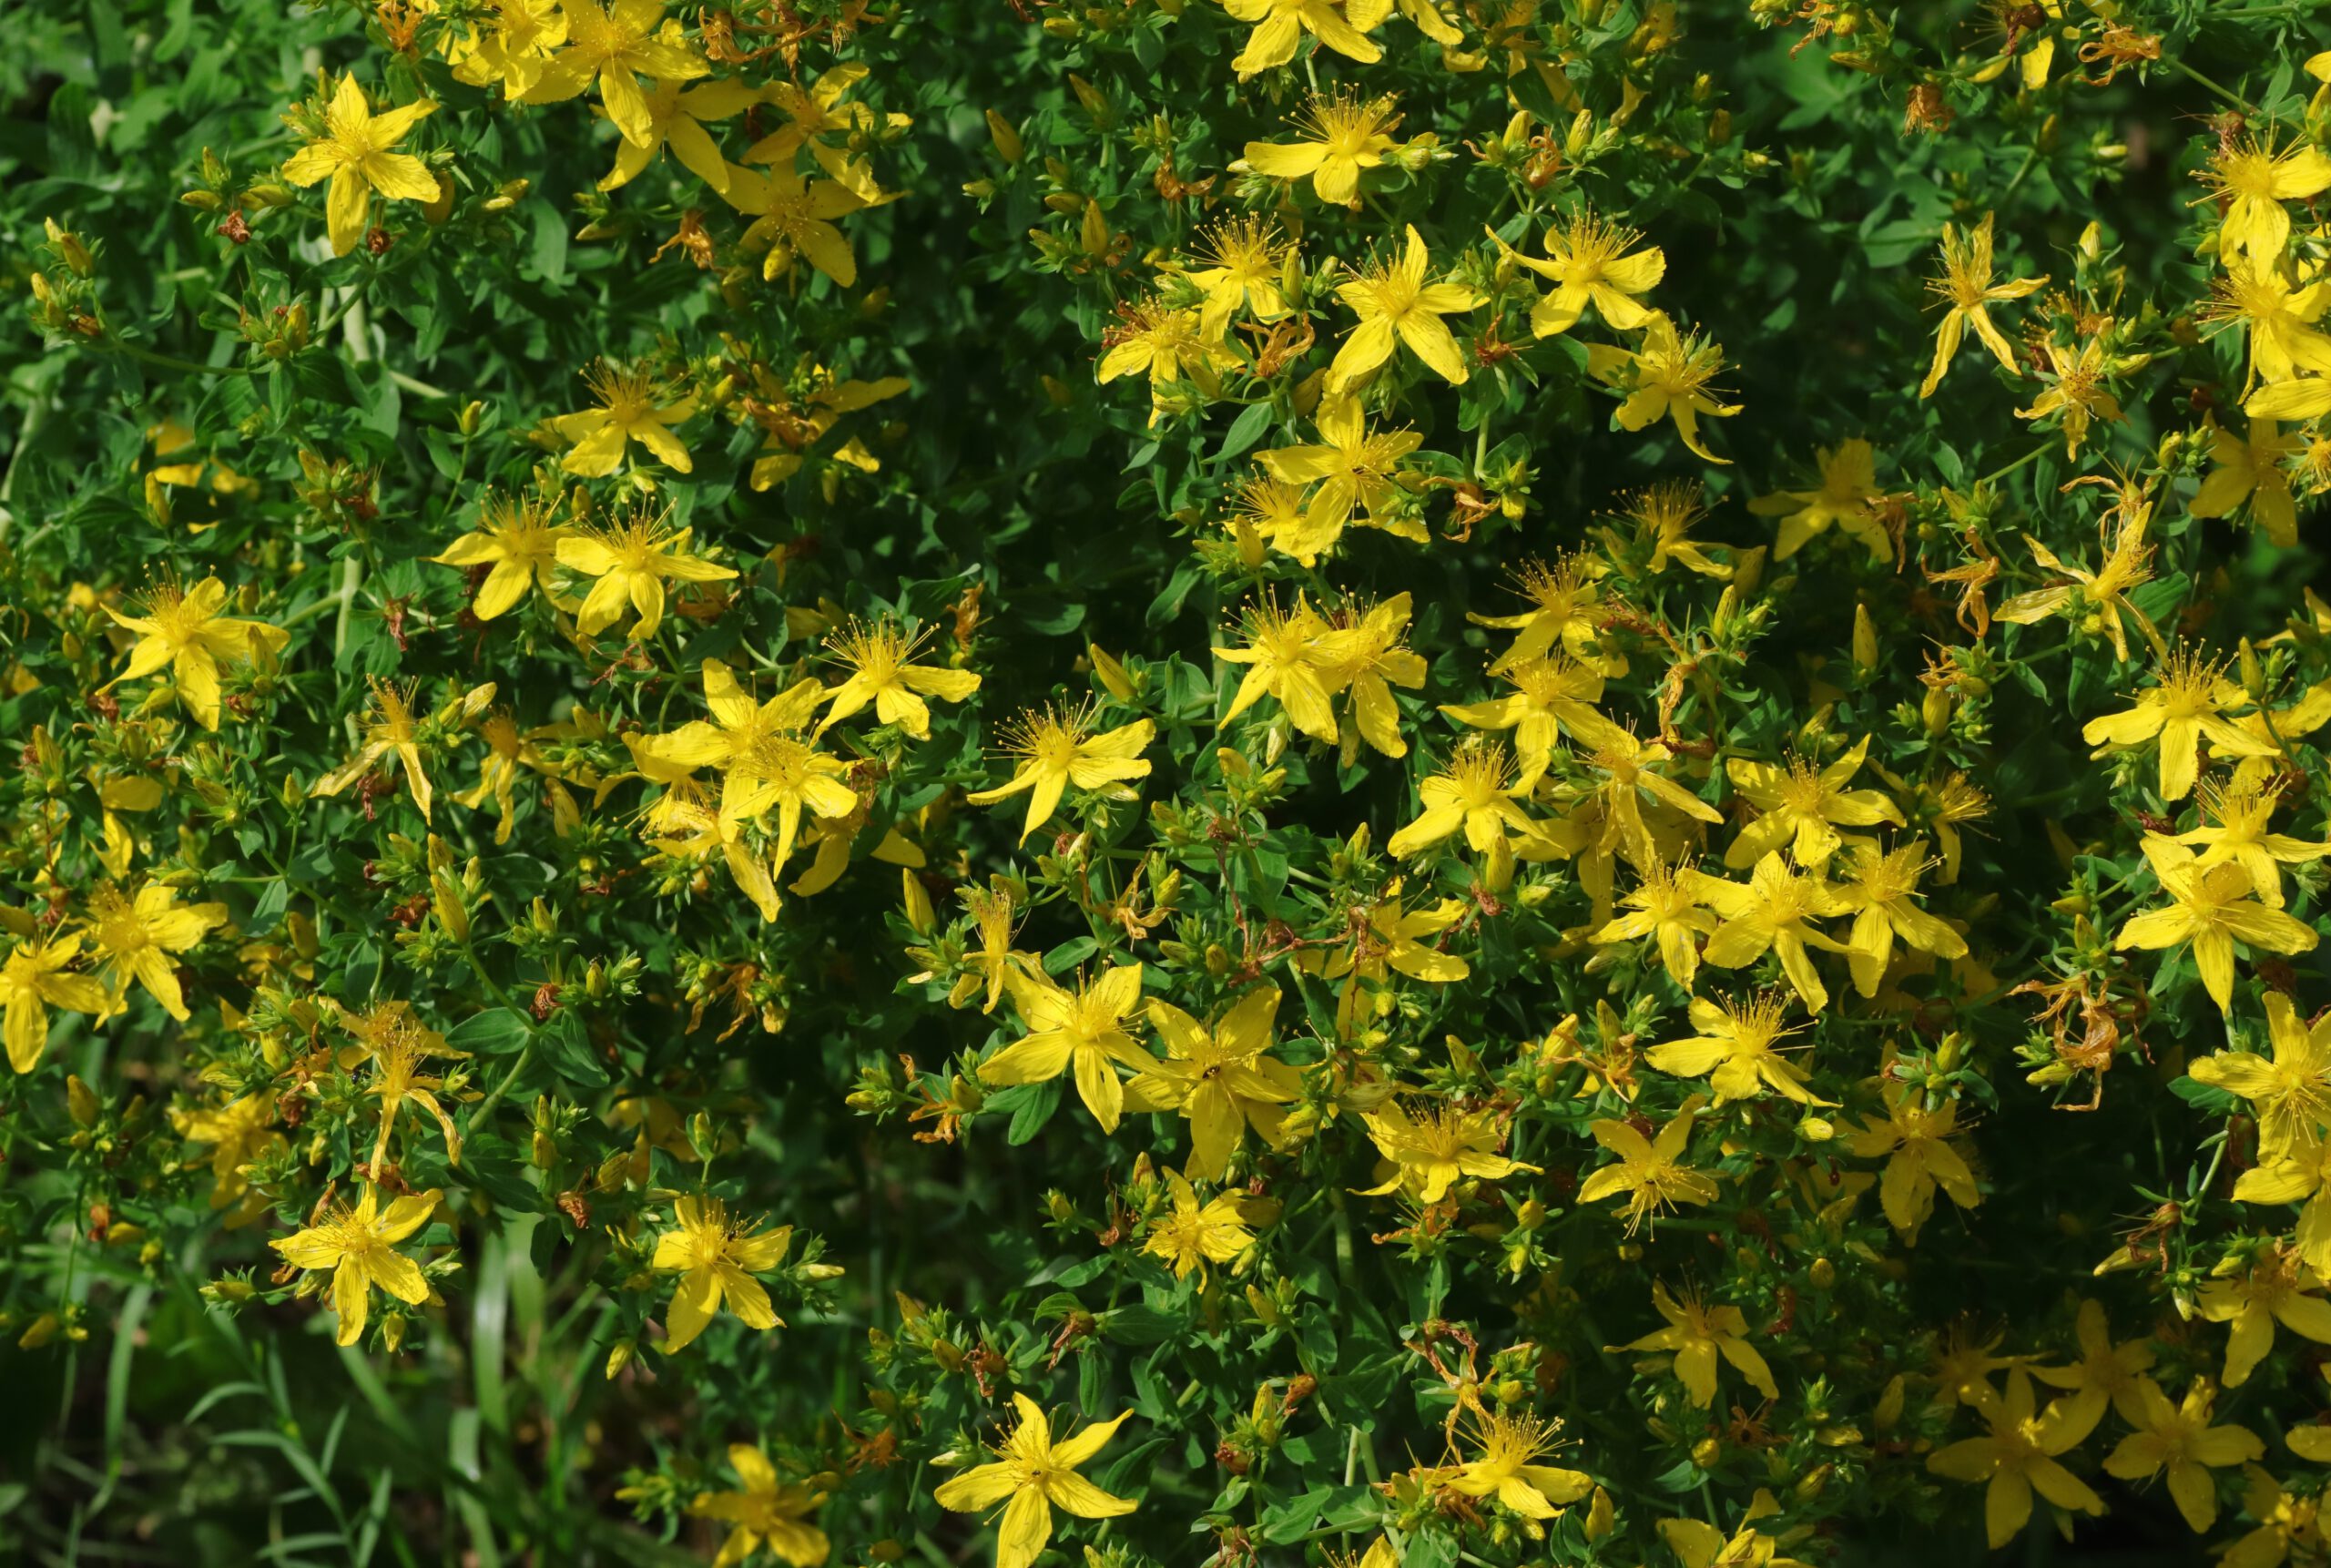 Echtes Johanniskraut in Blüte - die gelben Blüten sitzen in dichten Trugdolden an den Enden der Stängel.